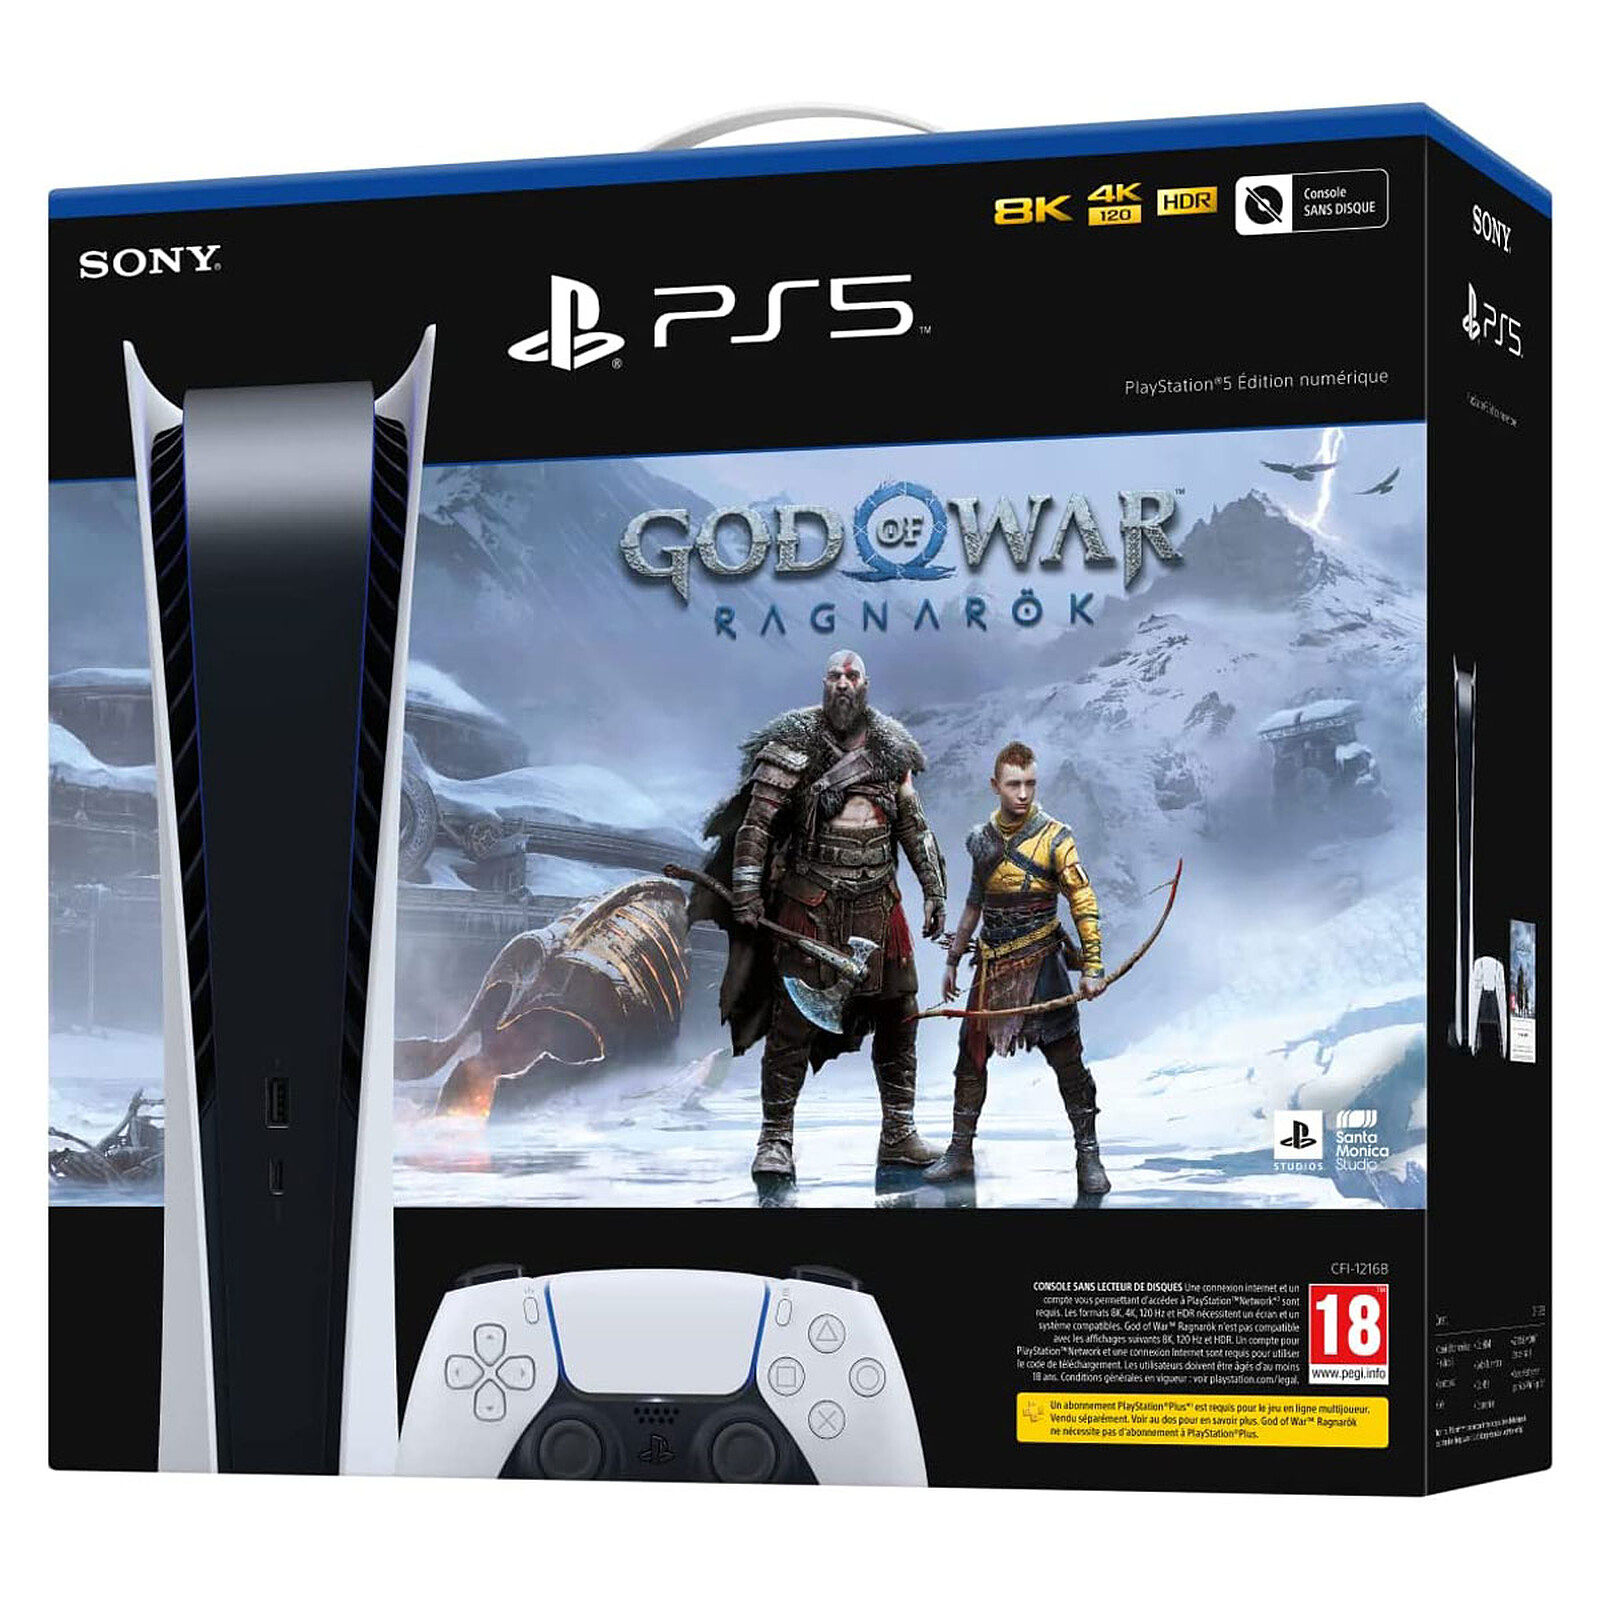 Sony PlayStation Digital Edition God of War: Ragnarok PS5 console  LDLC 3-year warranty